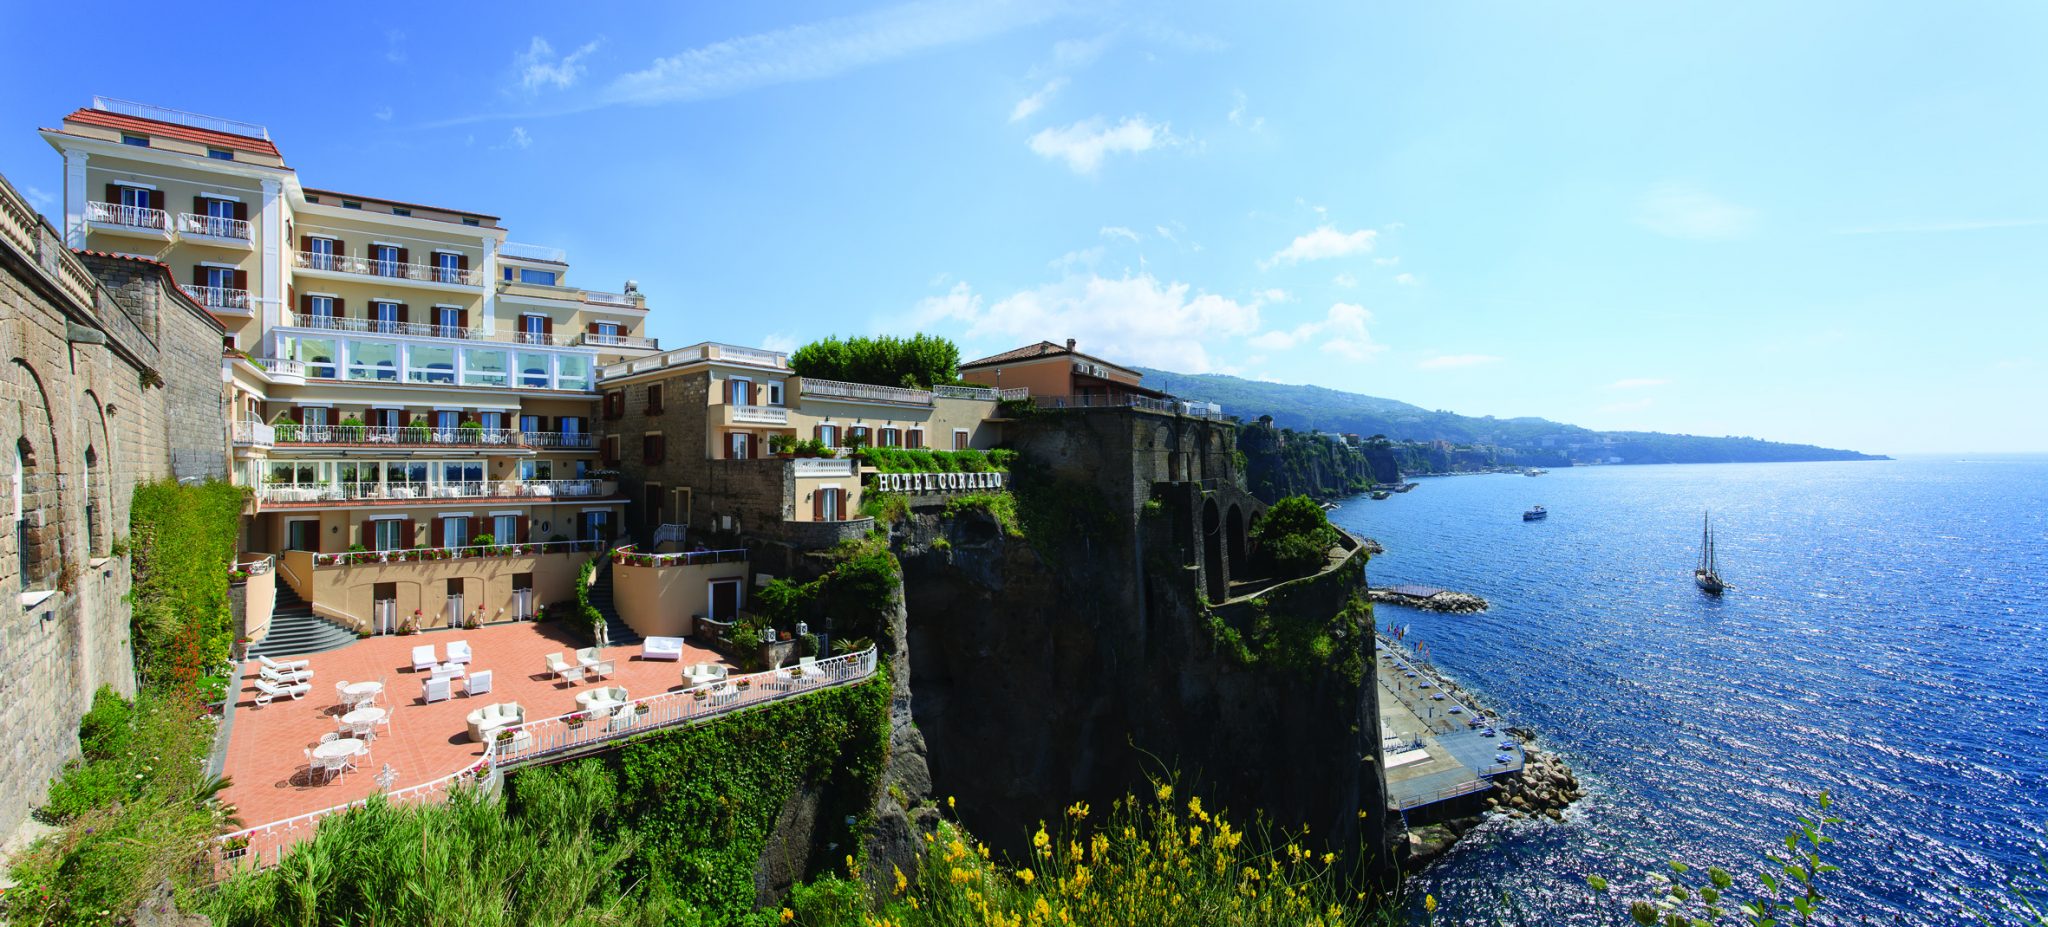 El Hotel Corallo Sorrento ofrece impresionantes vistas panorámicas del Golfo de Nápoles